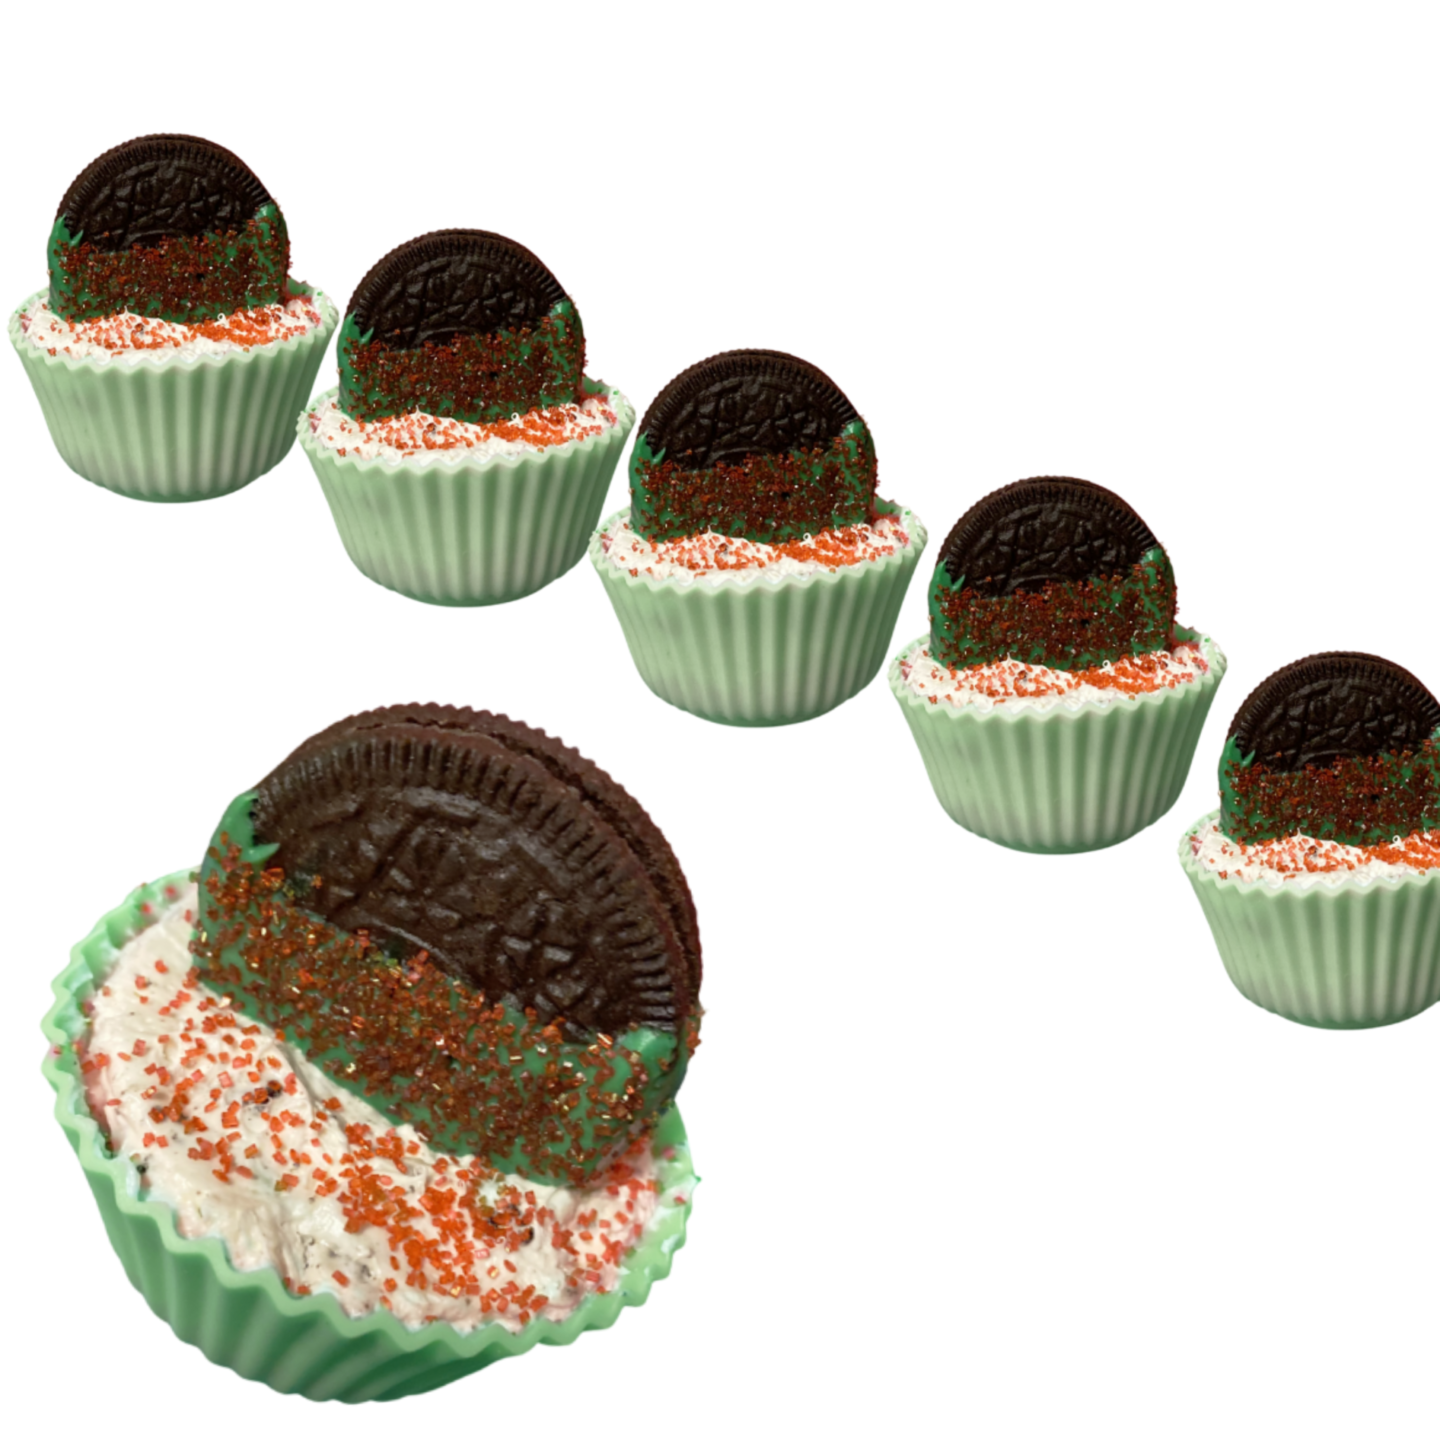 Row of mini Oreo cupcake pies